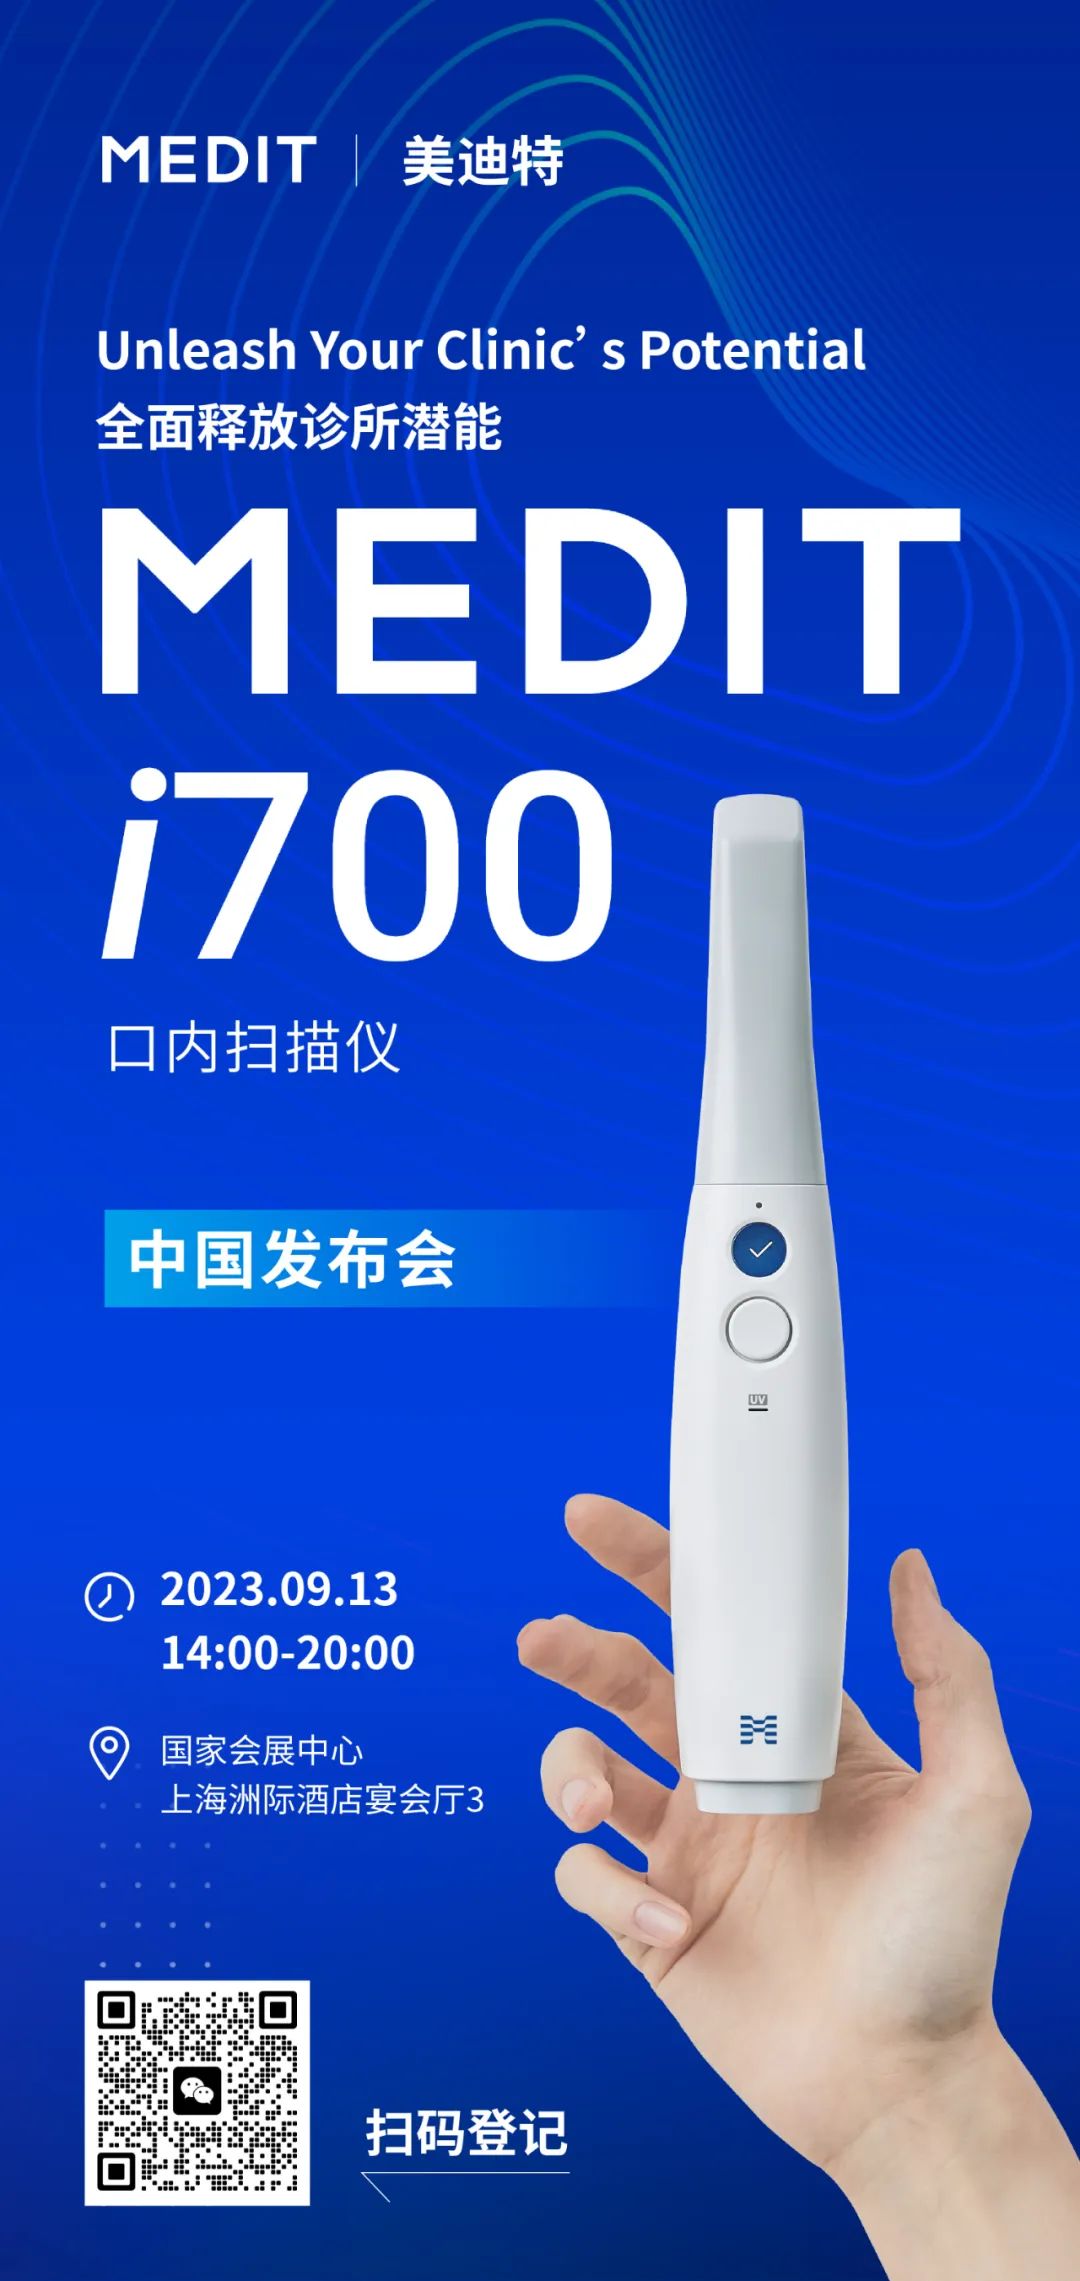 【诚挚邀约】Medit i700中国发布会，恭候莅临！